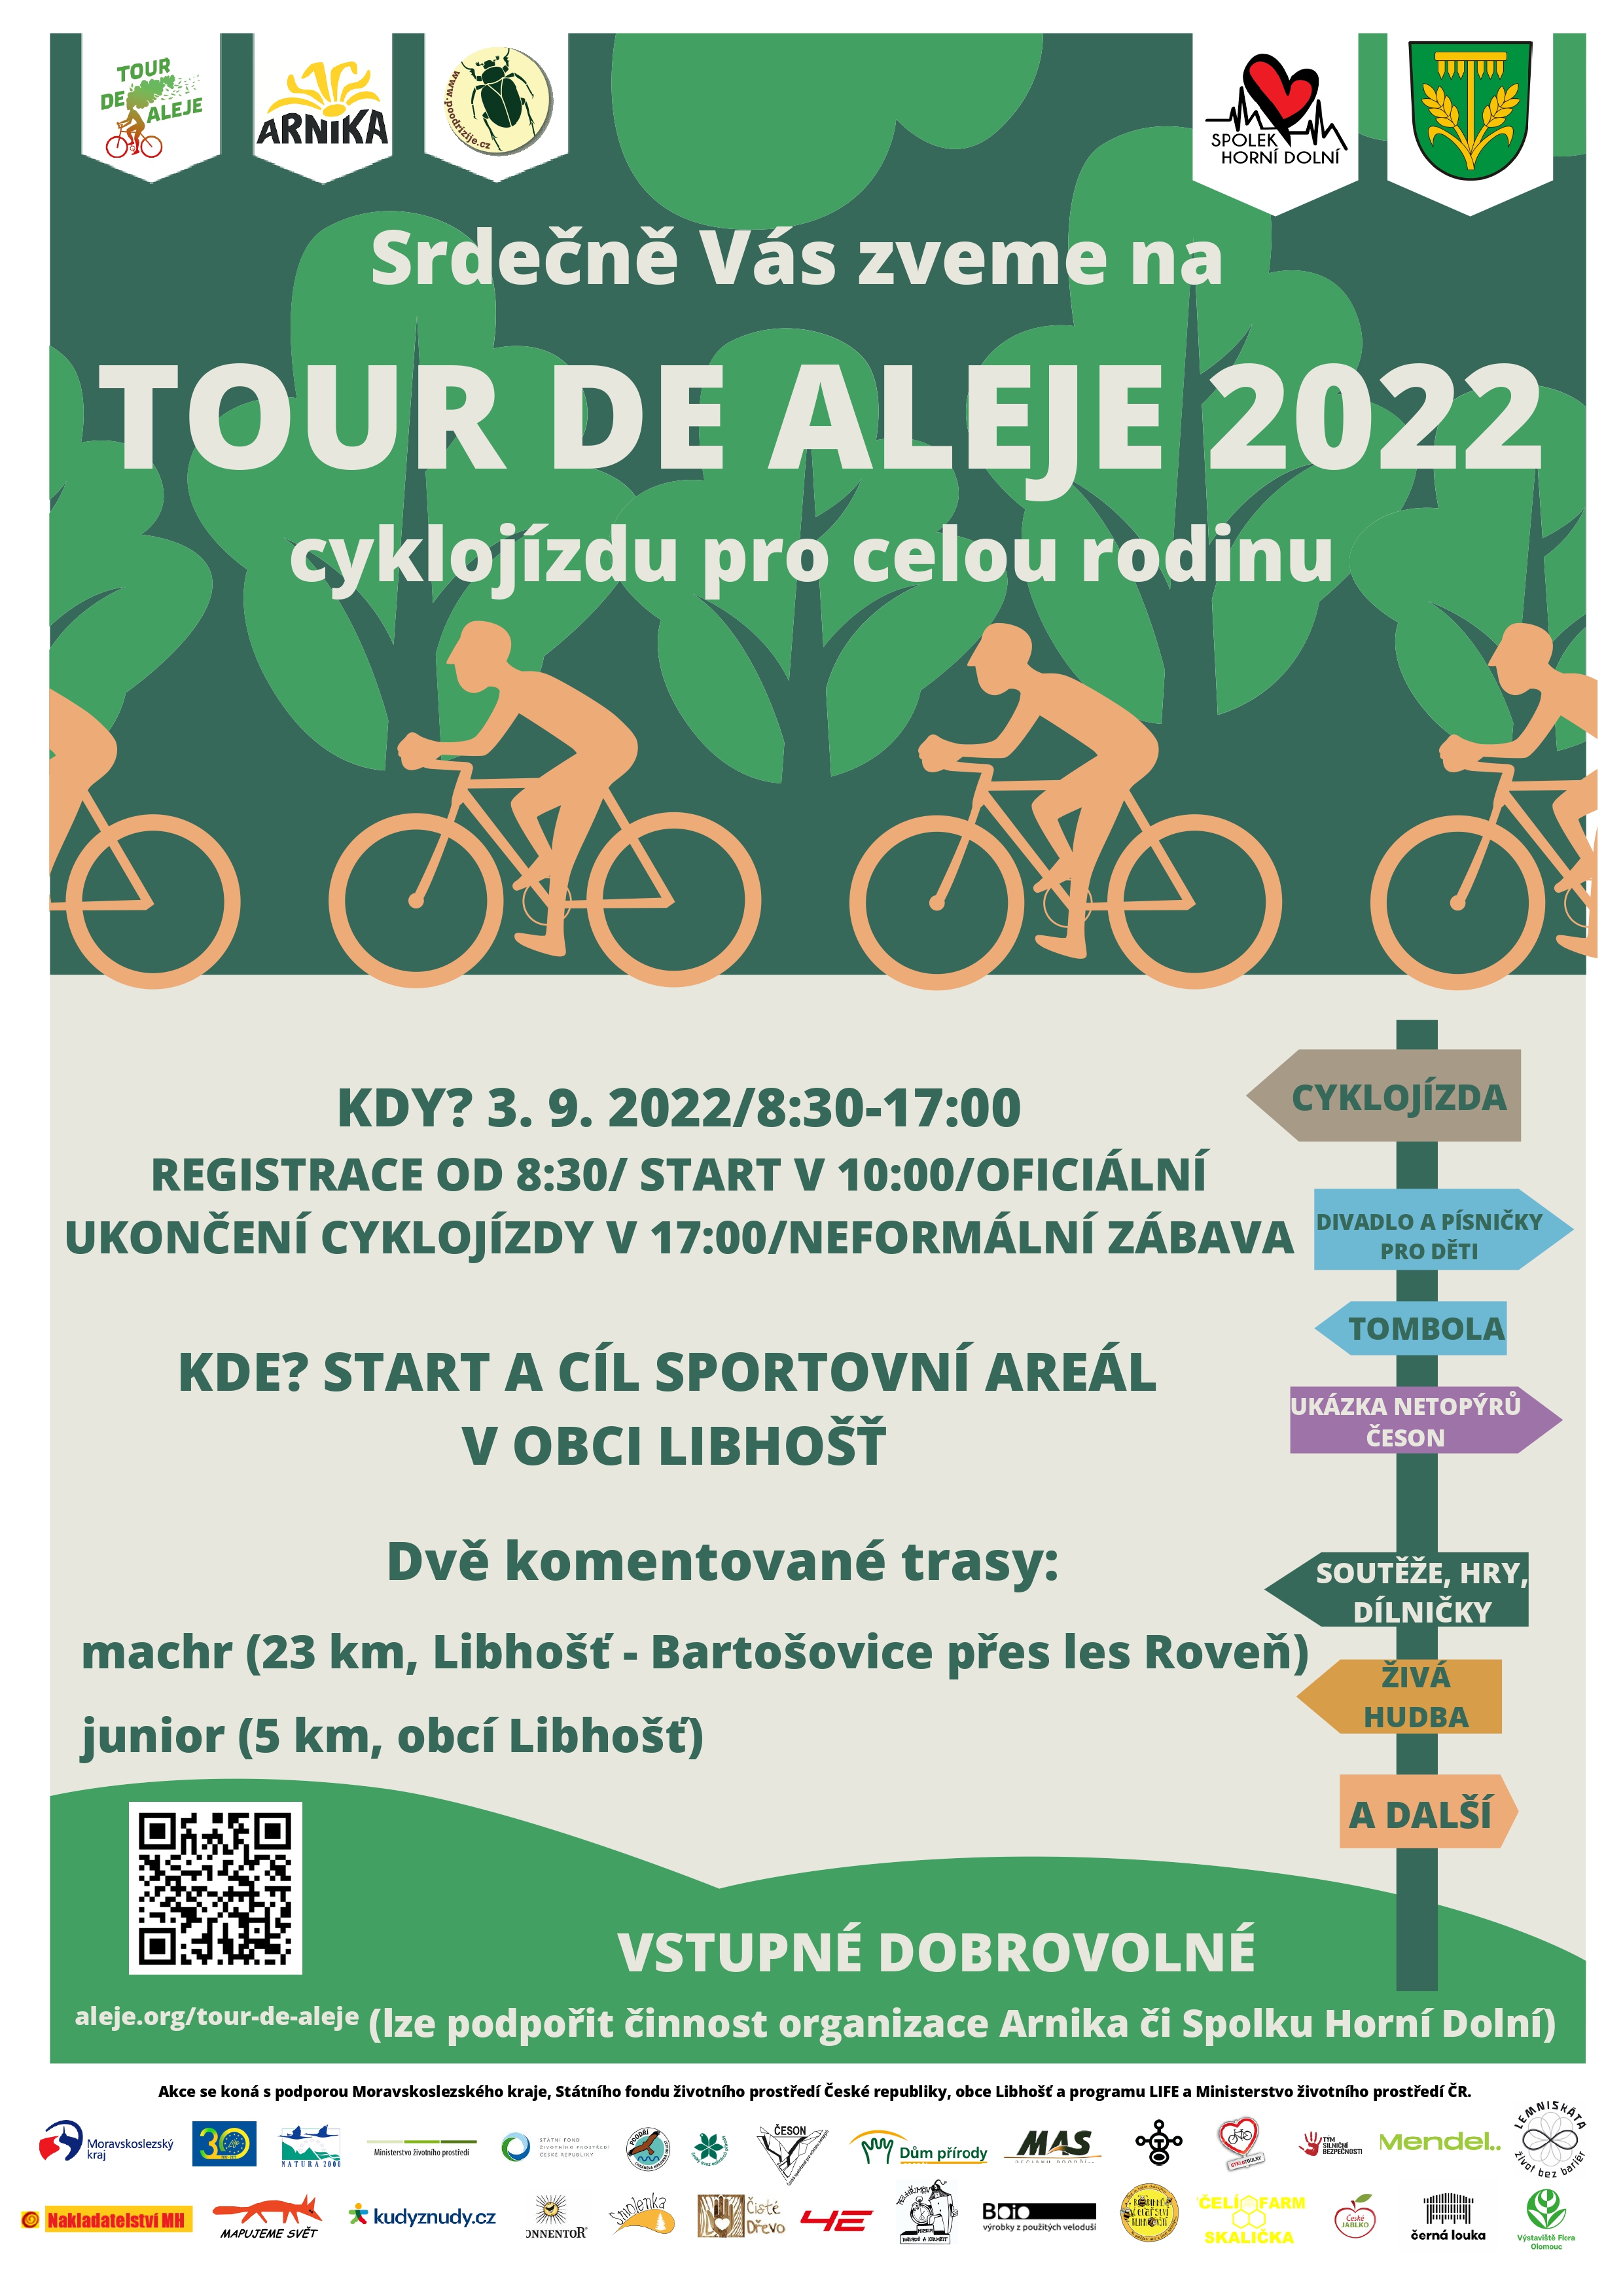 Plakt Tour de aleje 2022 FINLN VERZE page 0001 1